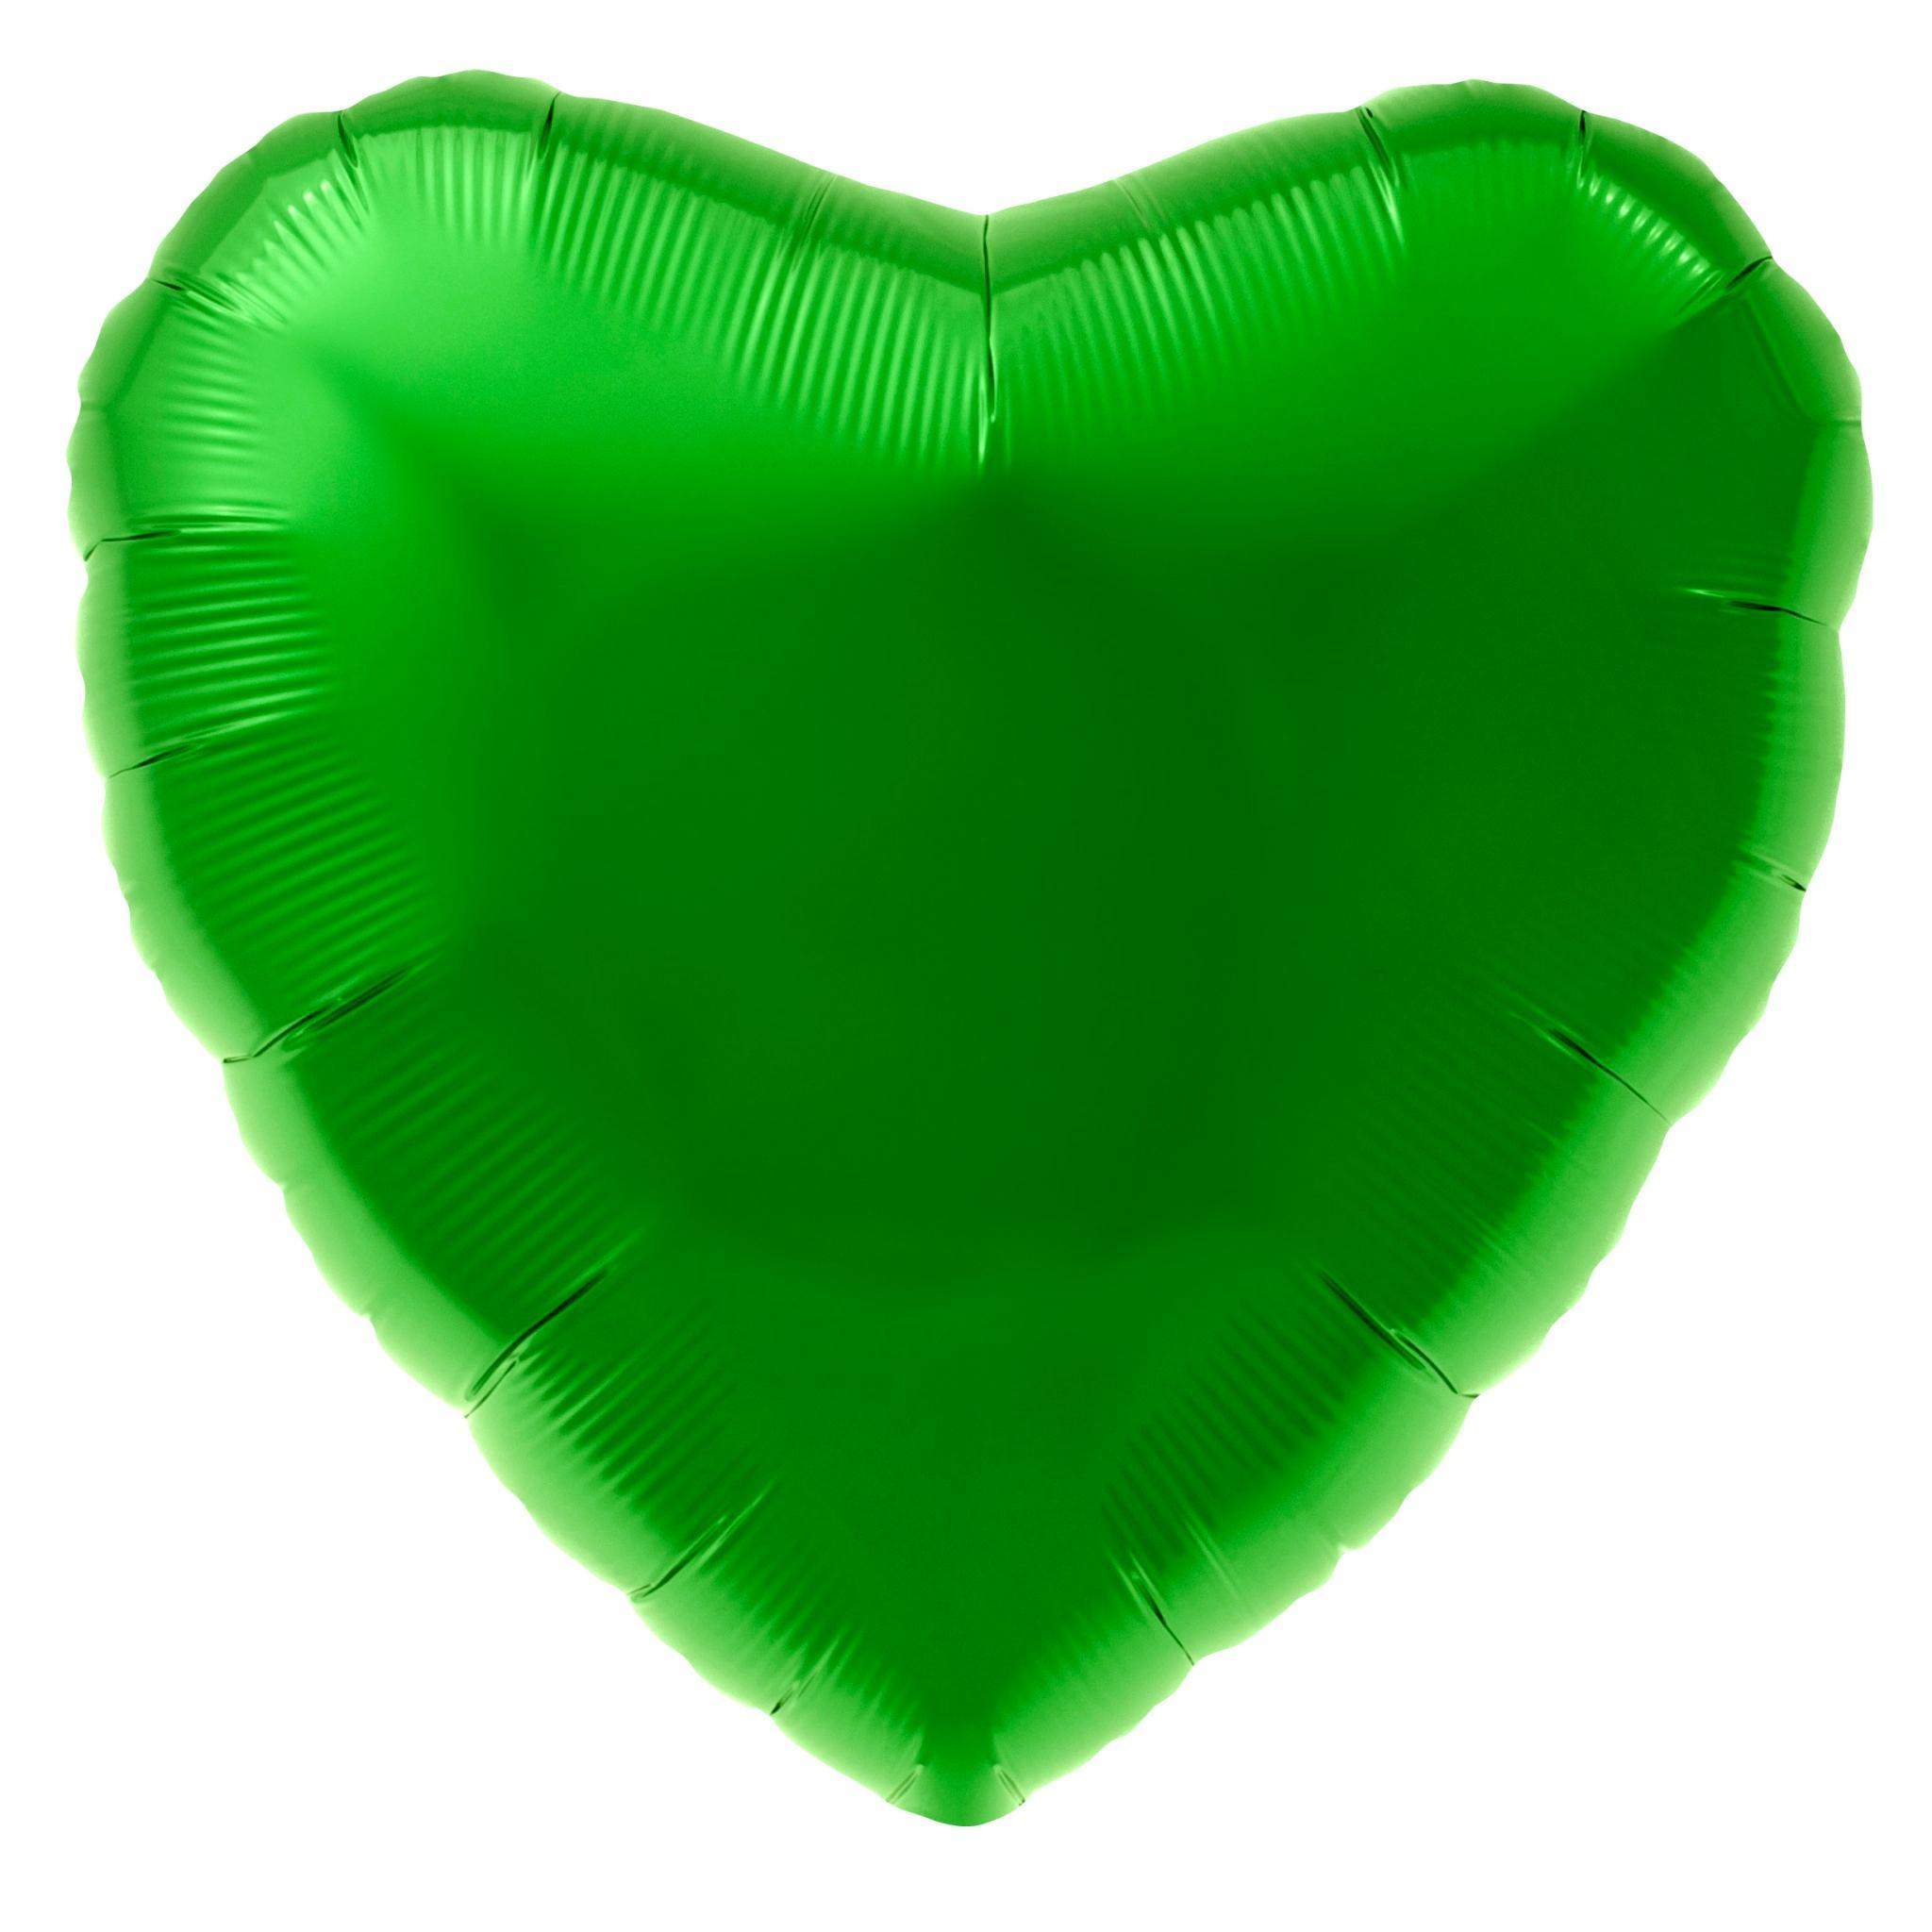 Globo Metálico Corazón Verde - 1 pza